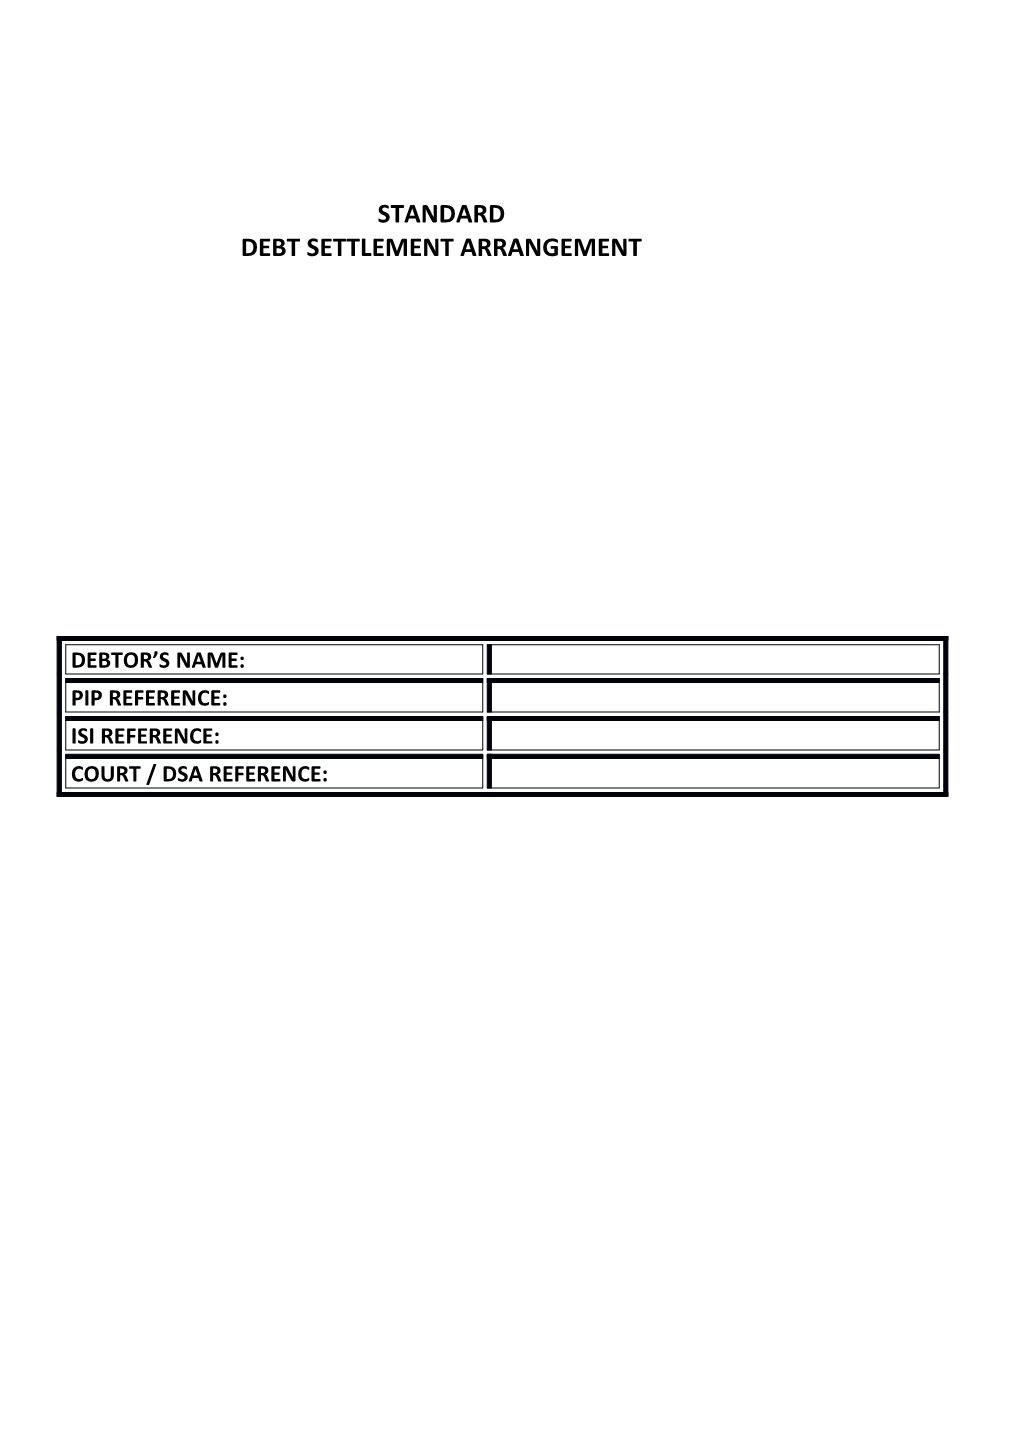 Debt Settlement Arrangement